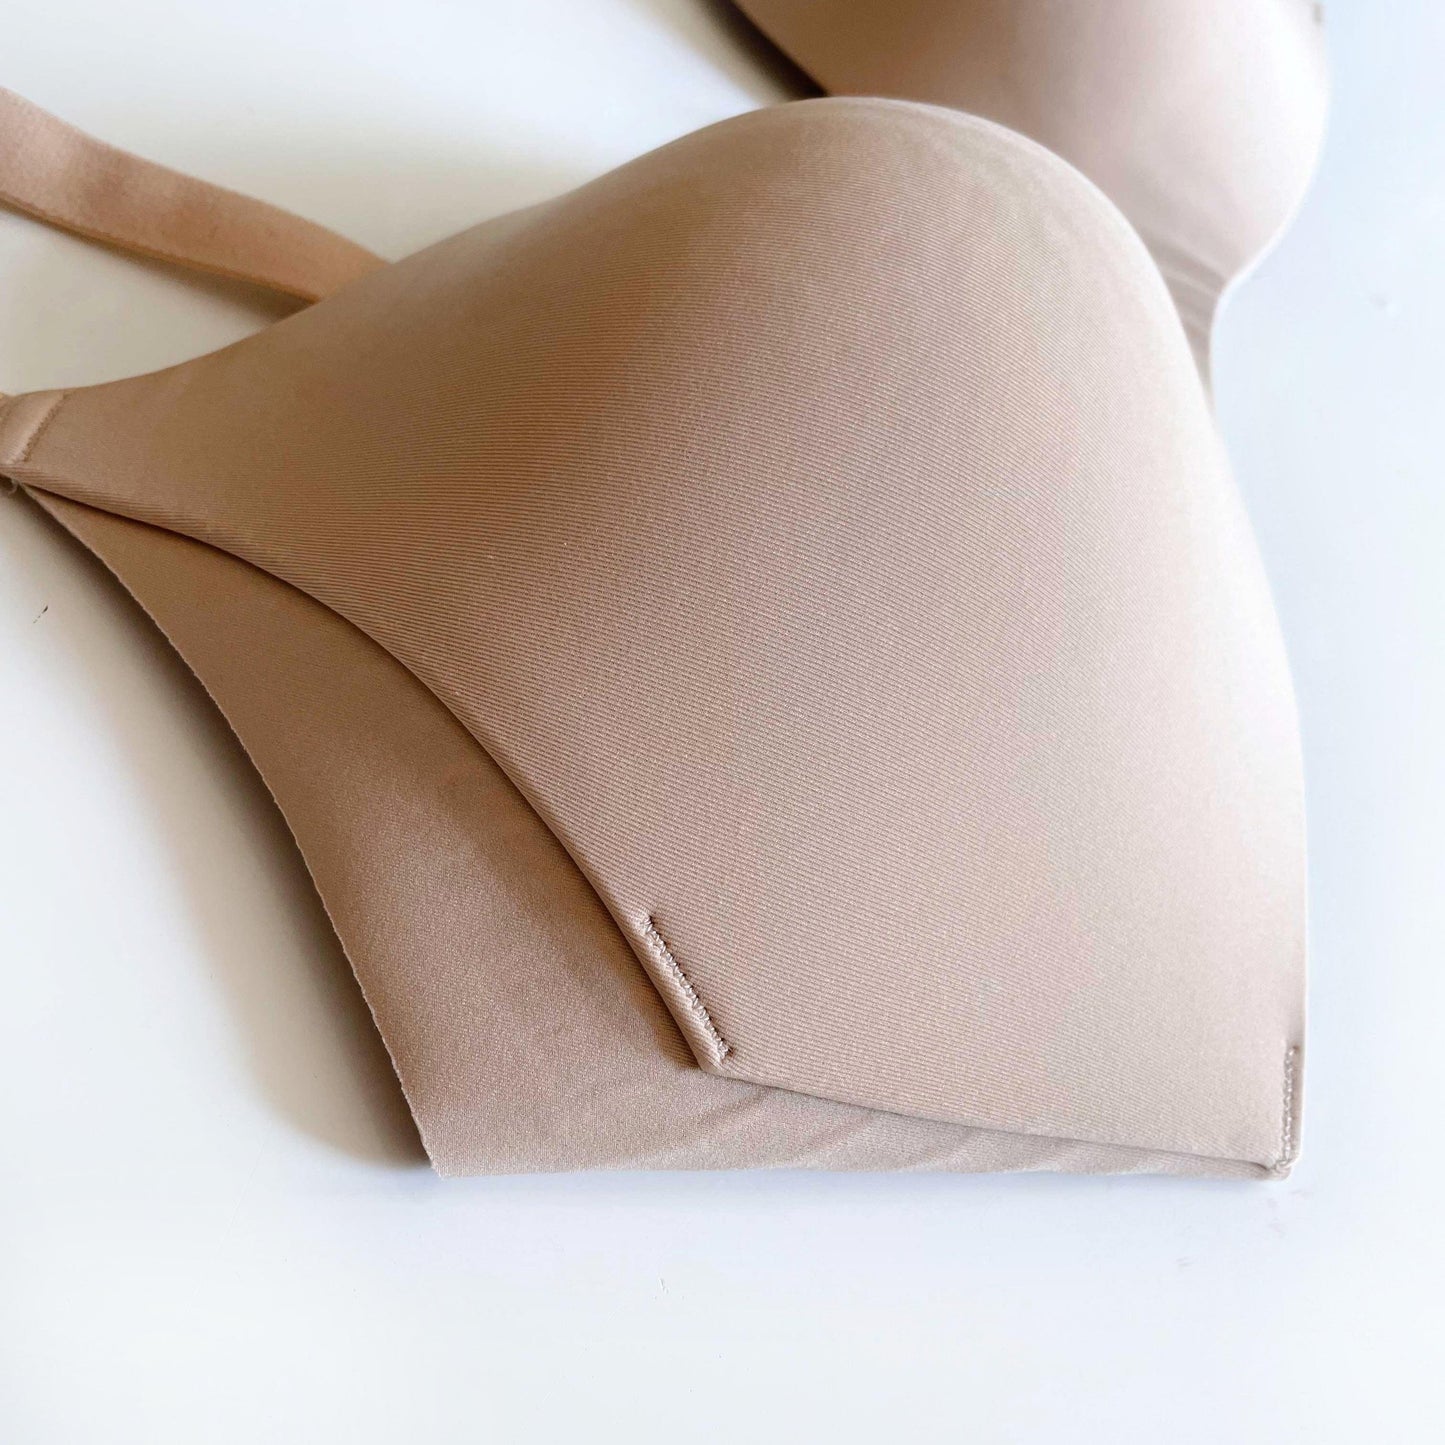 knix wingwoman contour bra - size 3